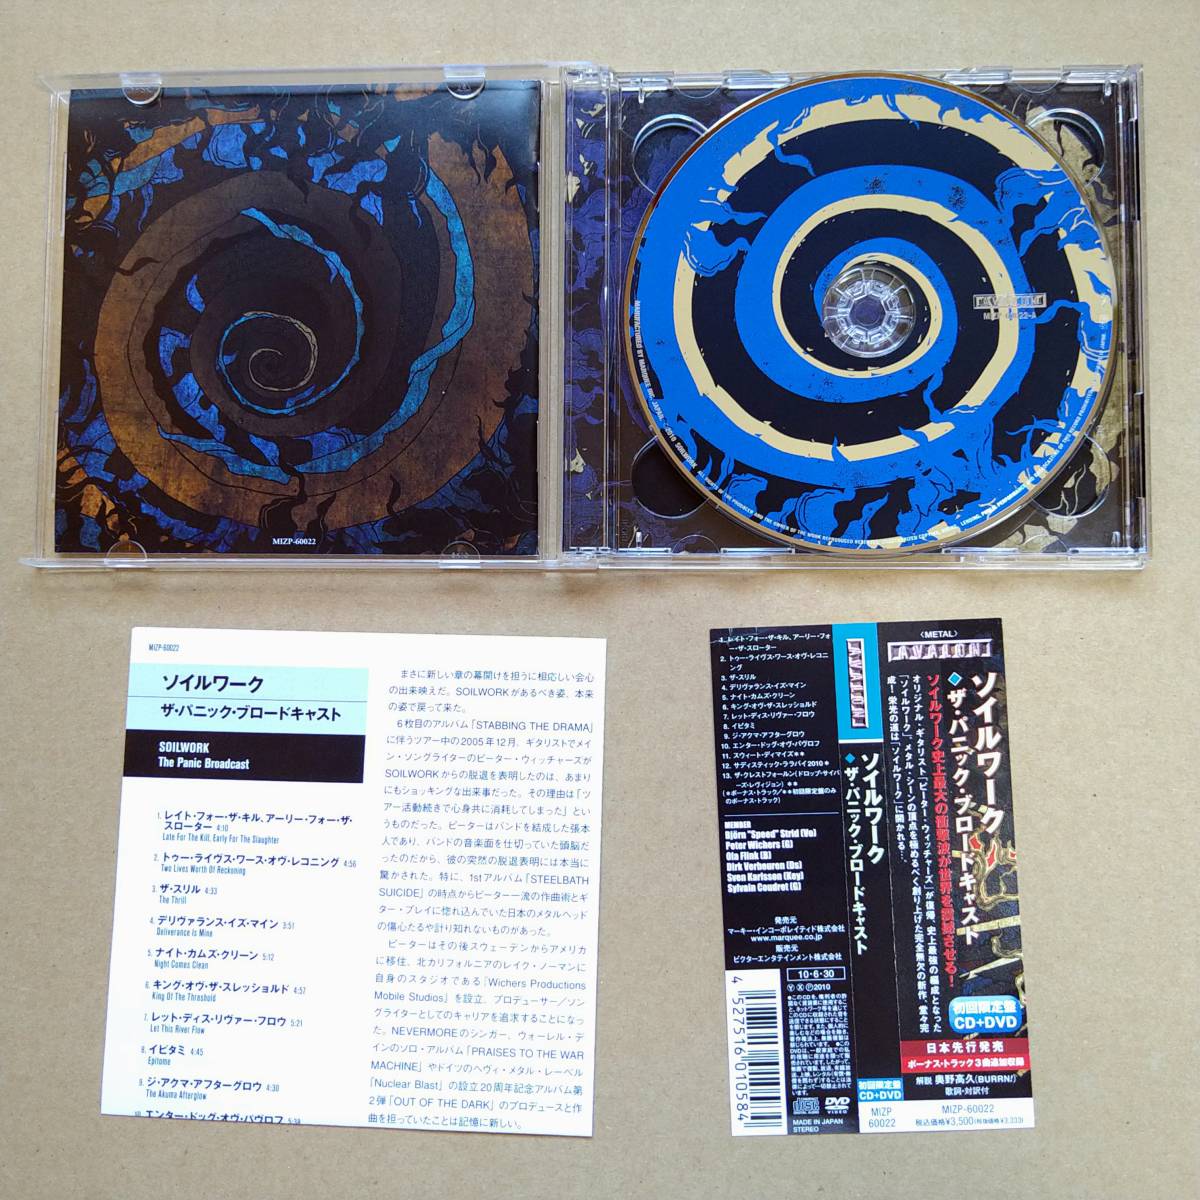 ソイルワーク SOILWORK / ザ・パニック・ブロードキャスト The Panic Broadcast（初回限定盤）[CD+DVD] 2010年 国内盤 MIZP-60022_画像3